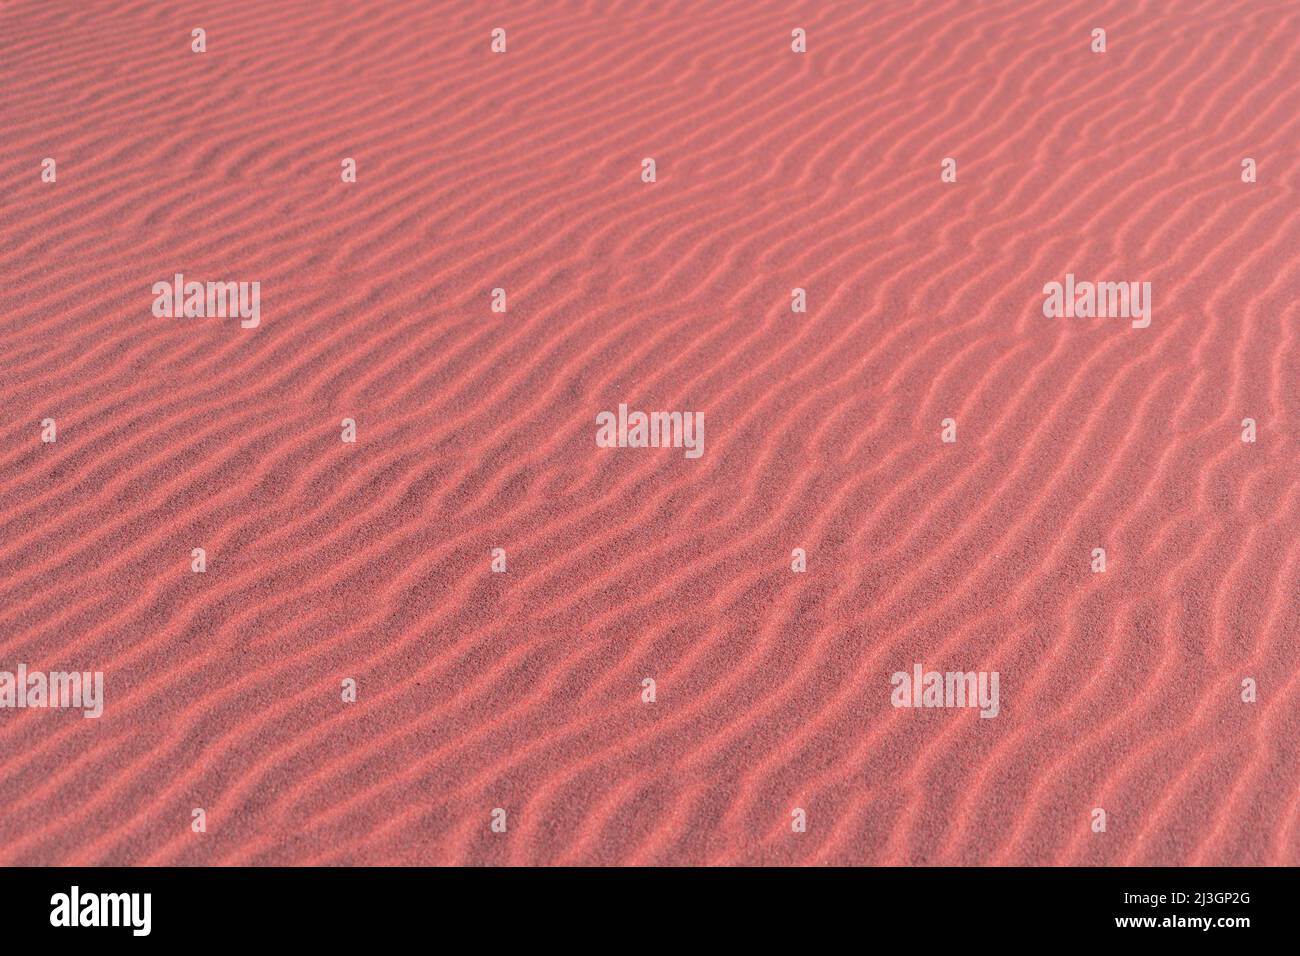 Paesaggio sul pianeta Marte, dune di sabbia scenografica scena del deserto su terra rossa pianeta. Vero e proprio sfondo fantascienza astratto texture Foto Stock